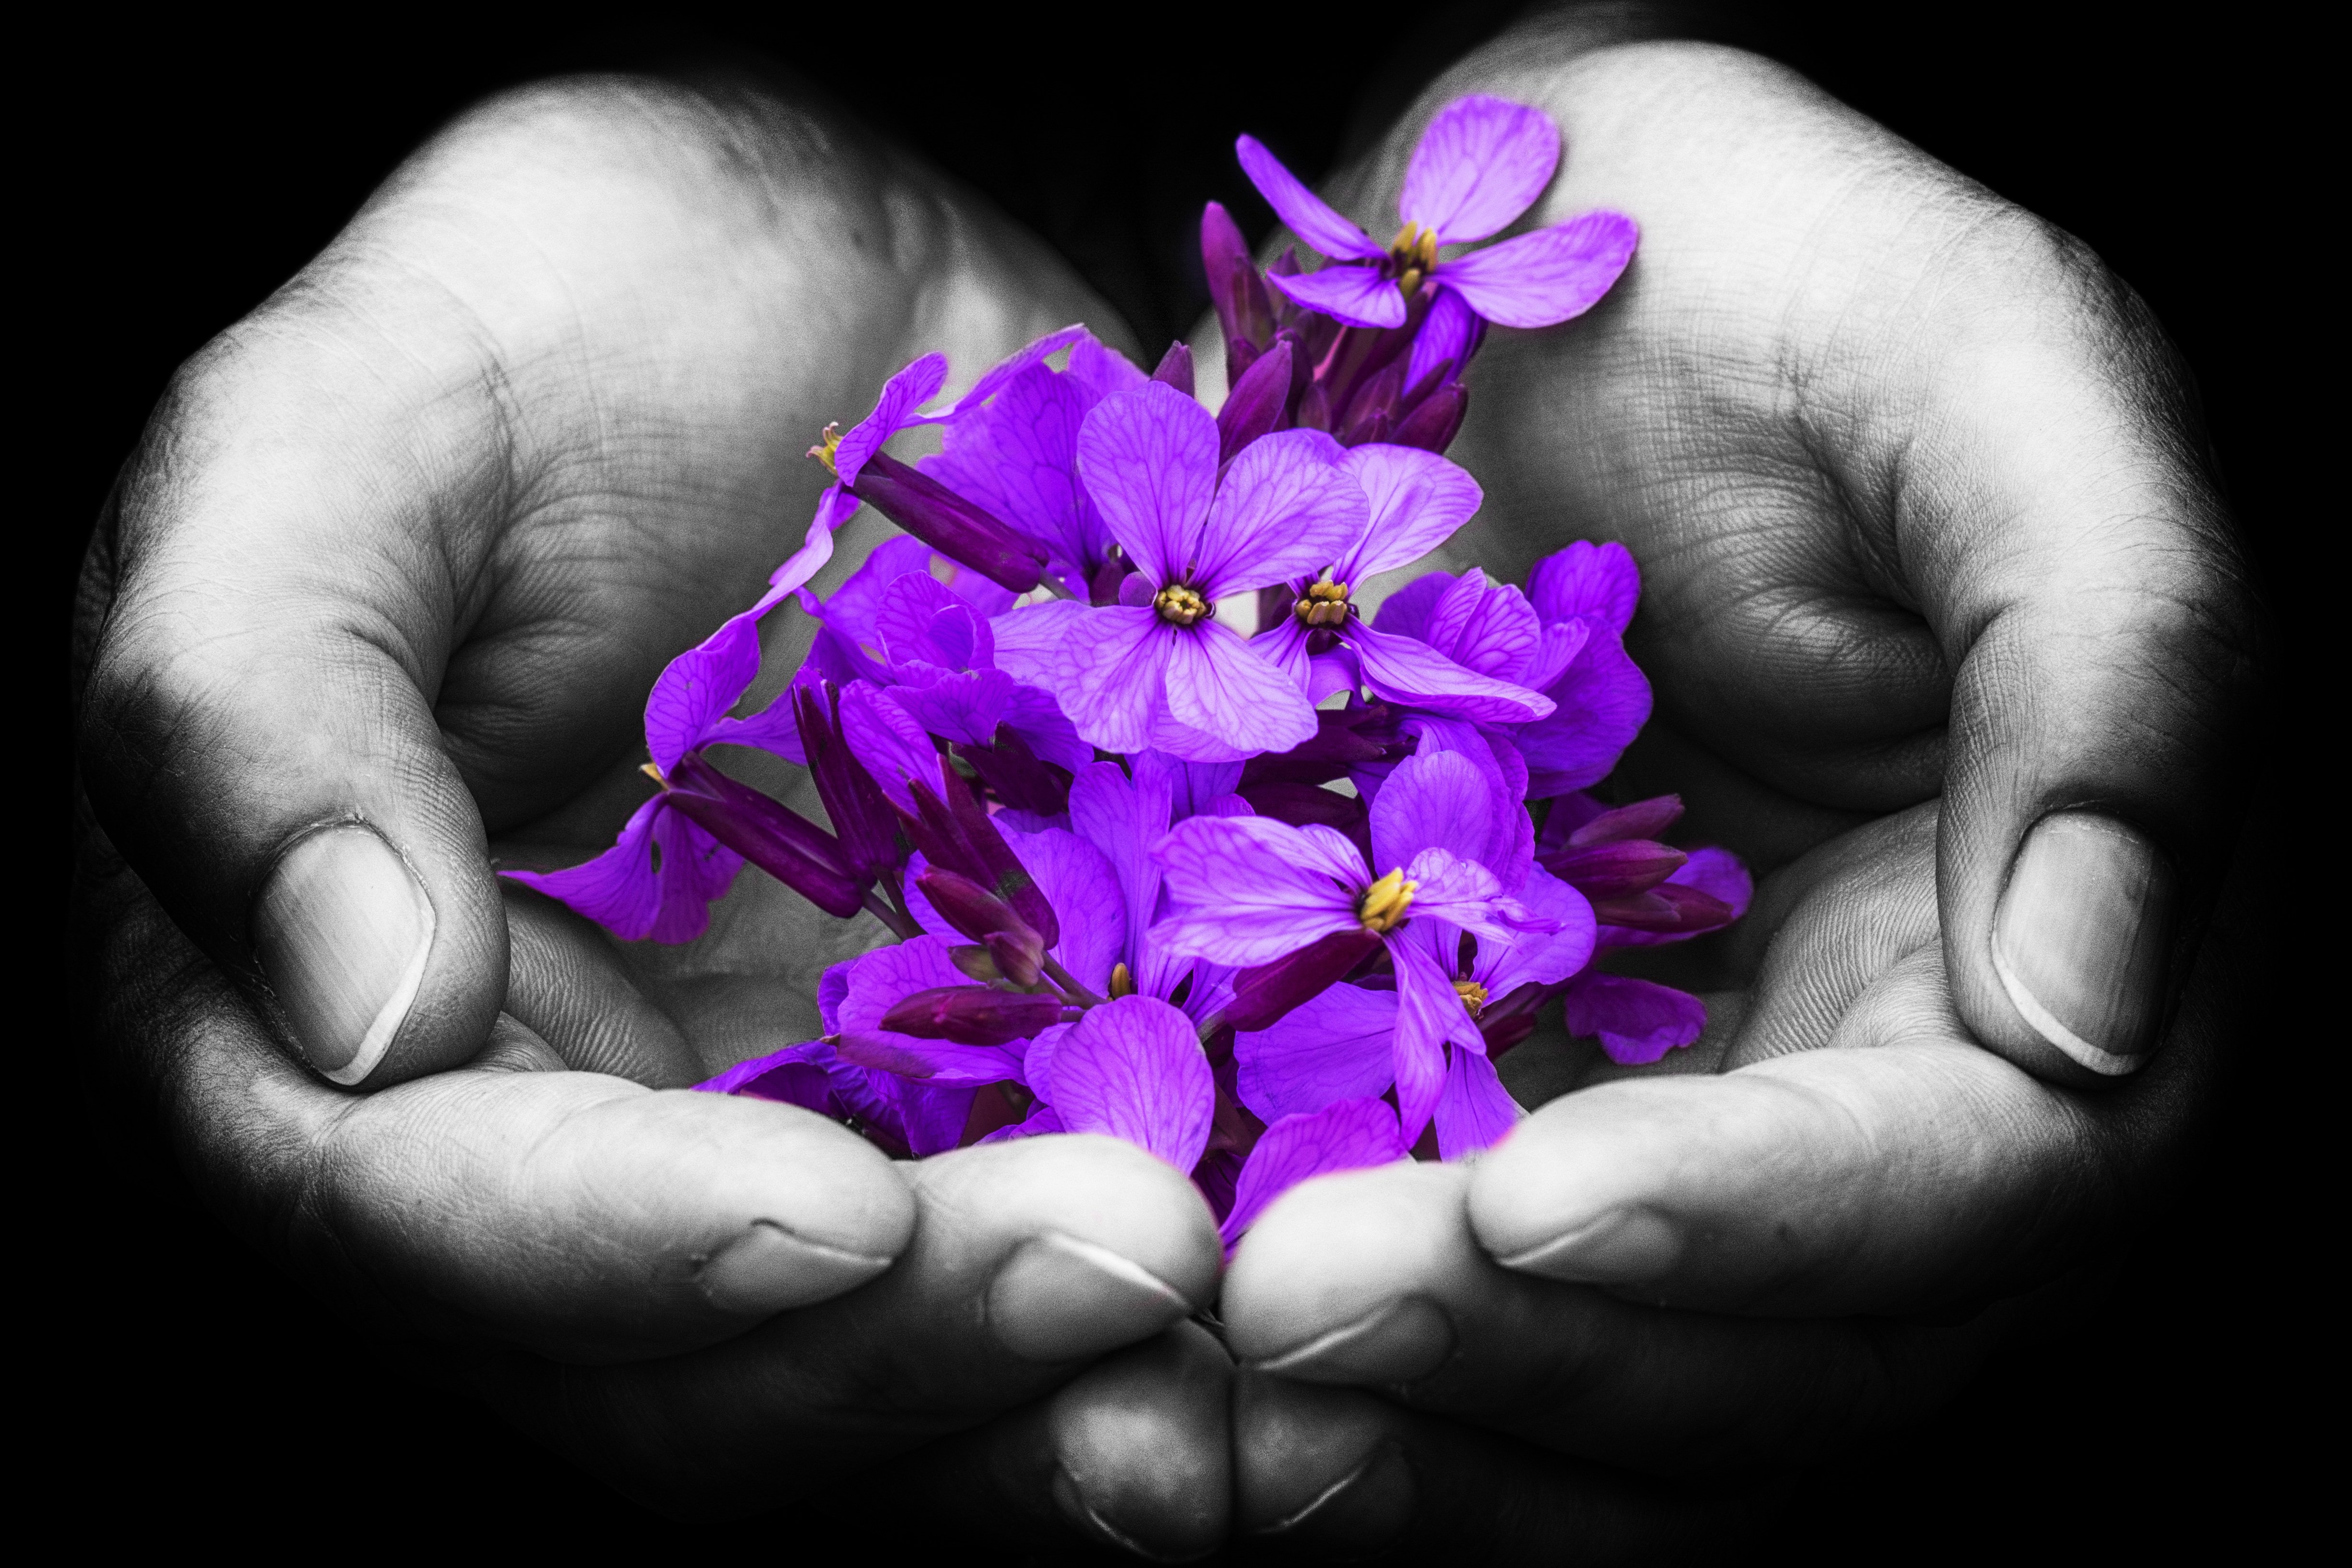 Be a flower kusuriya. Цветы в ладонях. Красивые цветы в руках. Цветок на руку.. Цветы в мужских руках.